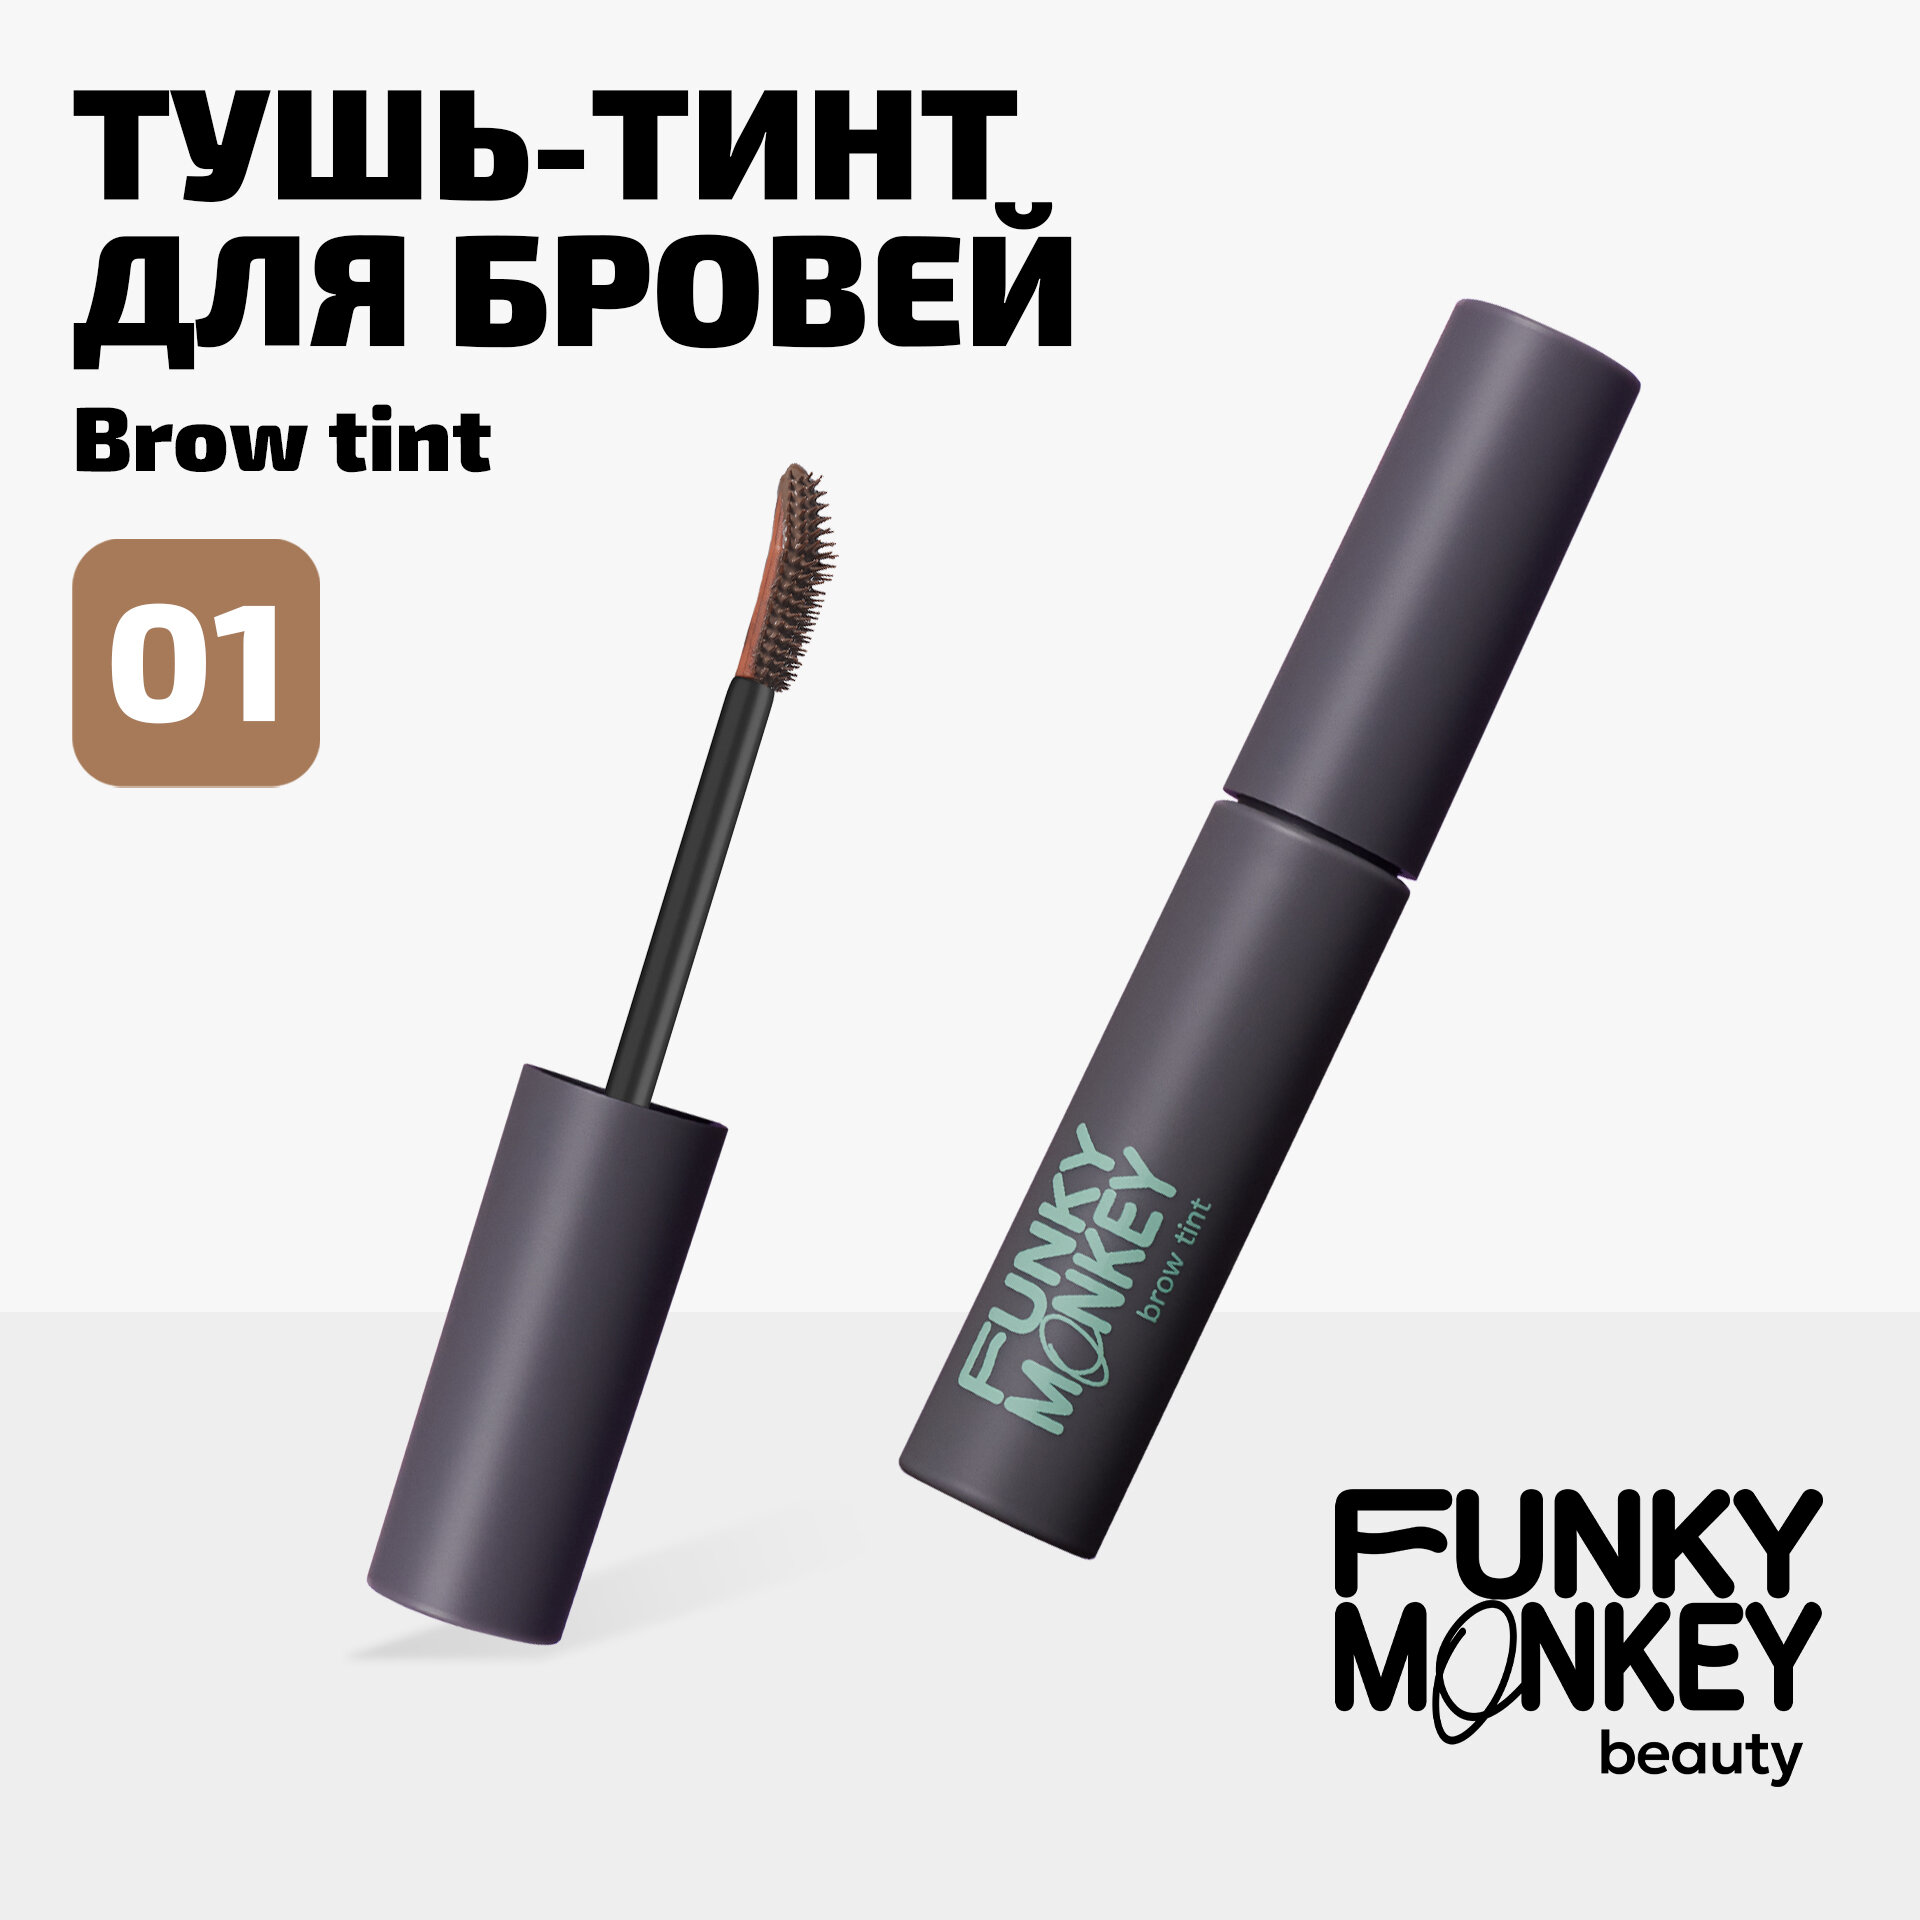 Funky Monkey Тушь-тинт для бровей Brow tint тон 01